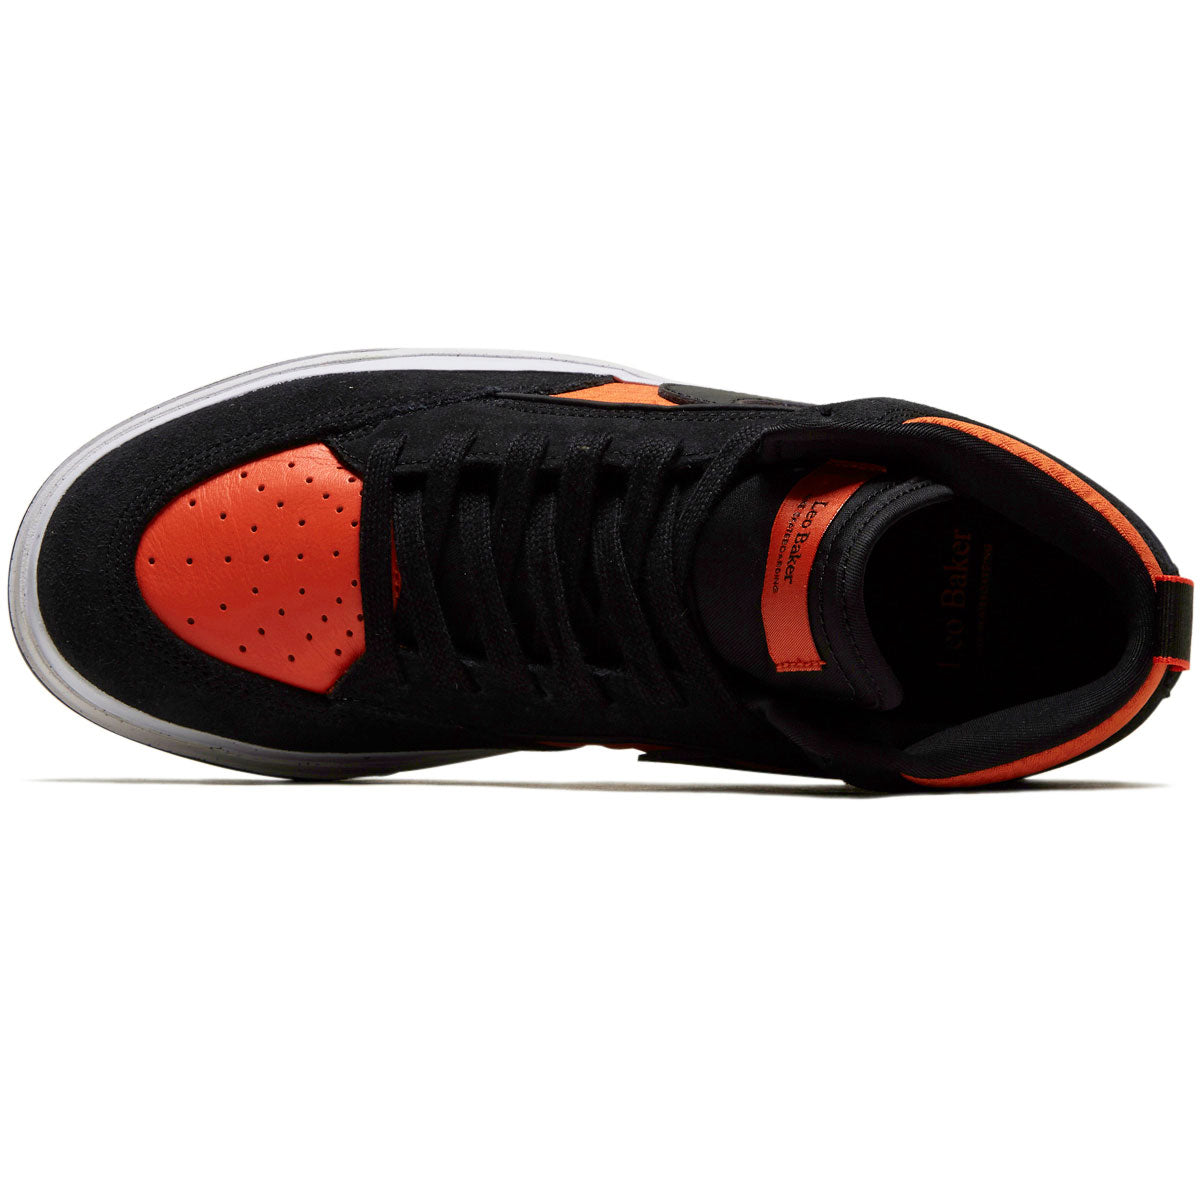 Nike SB React Leo Shoes - Black/Black/Orange/Electro Orange image 3